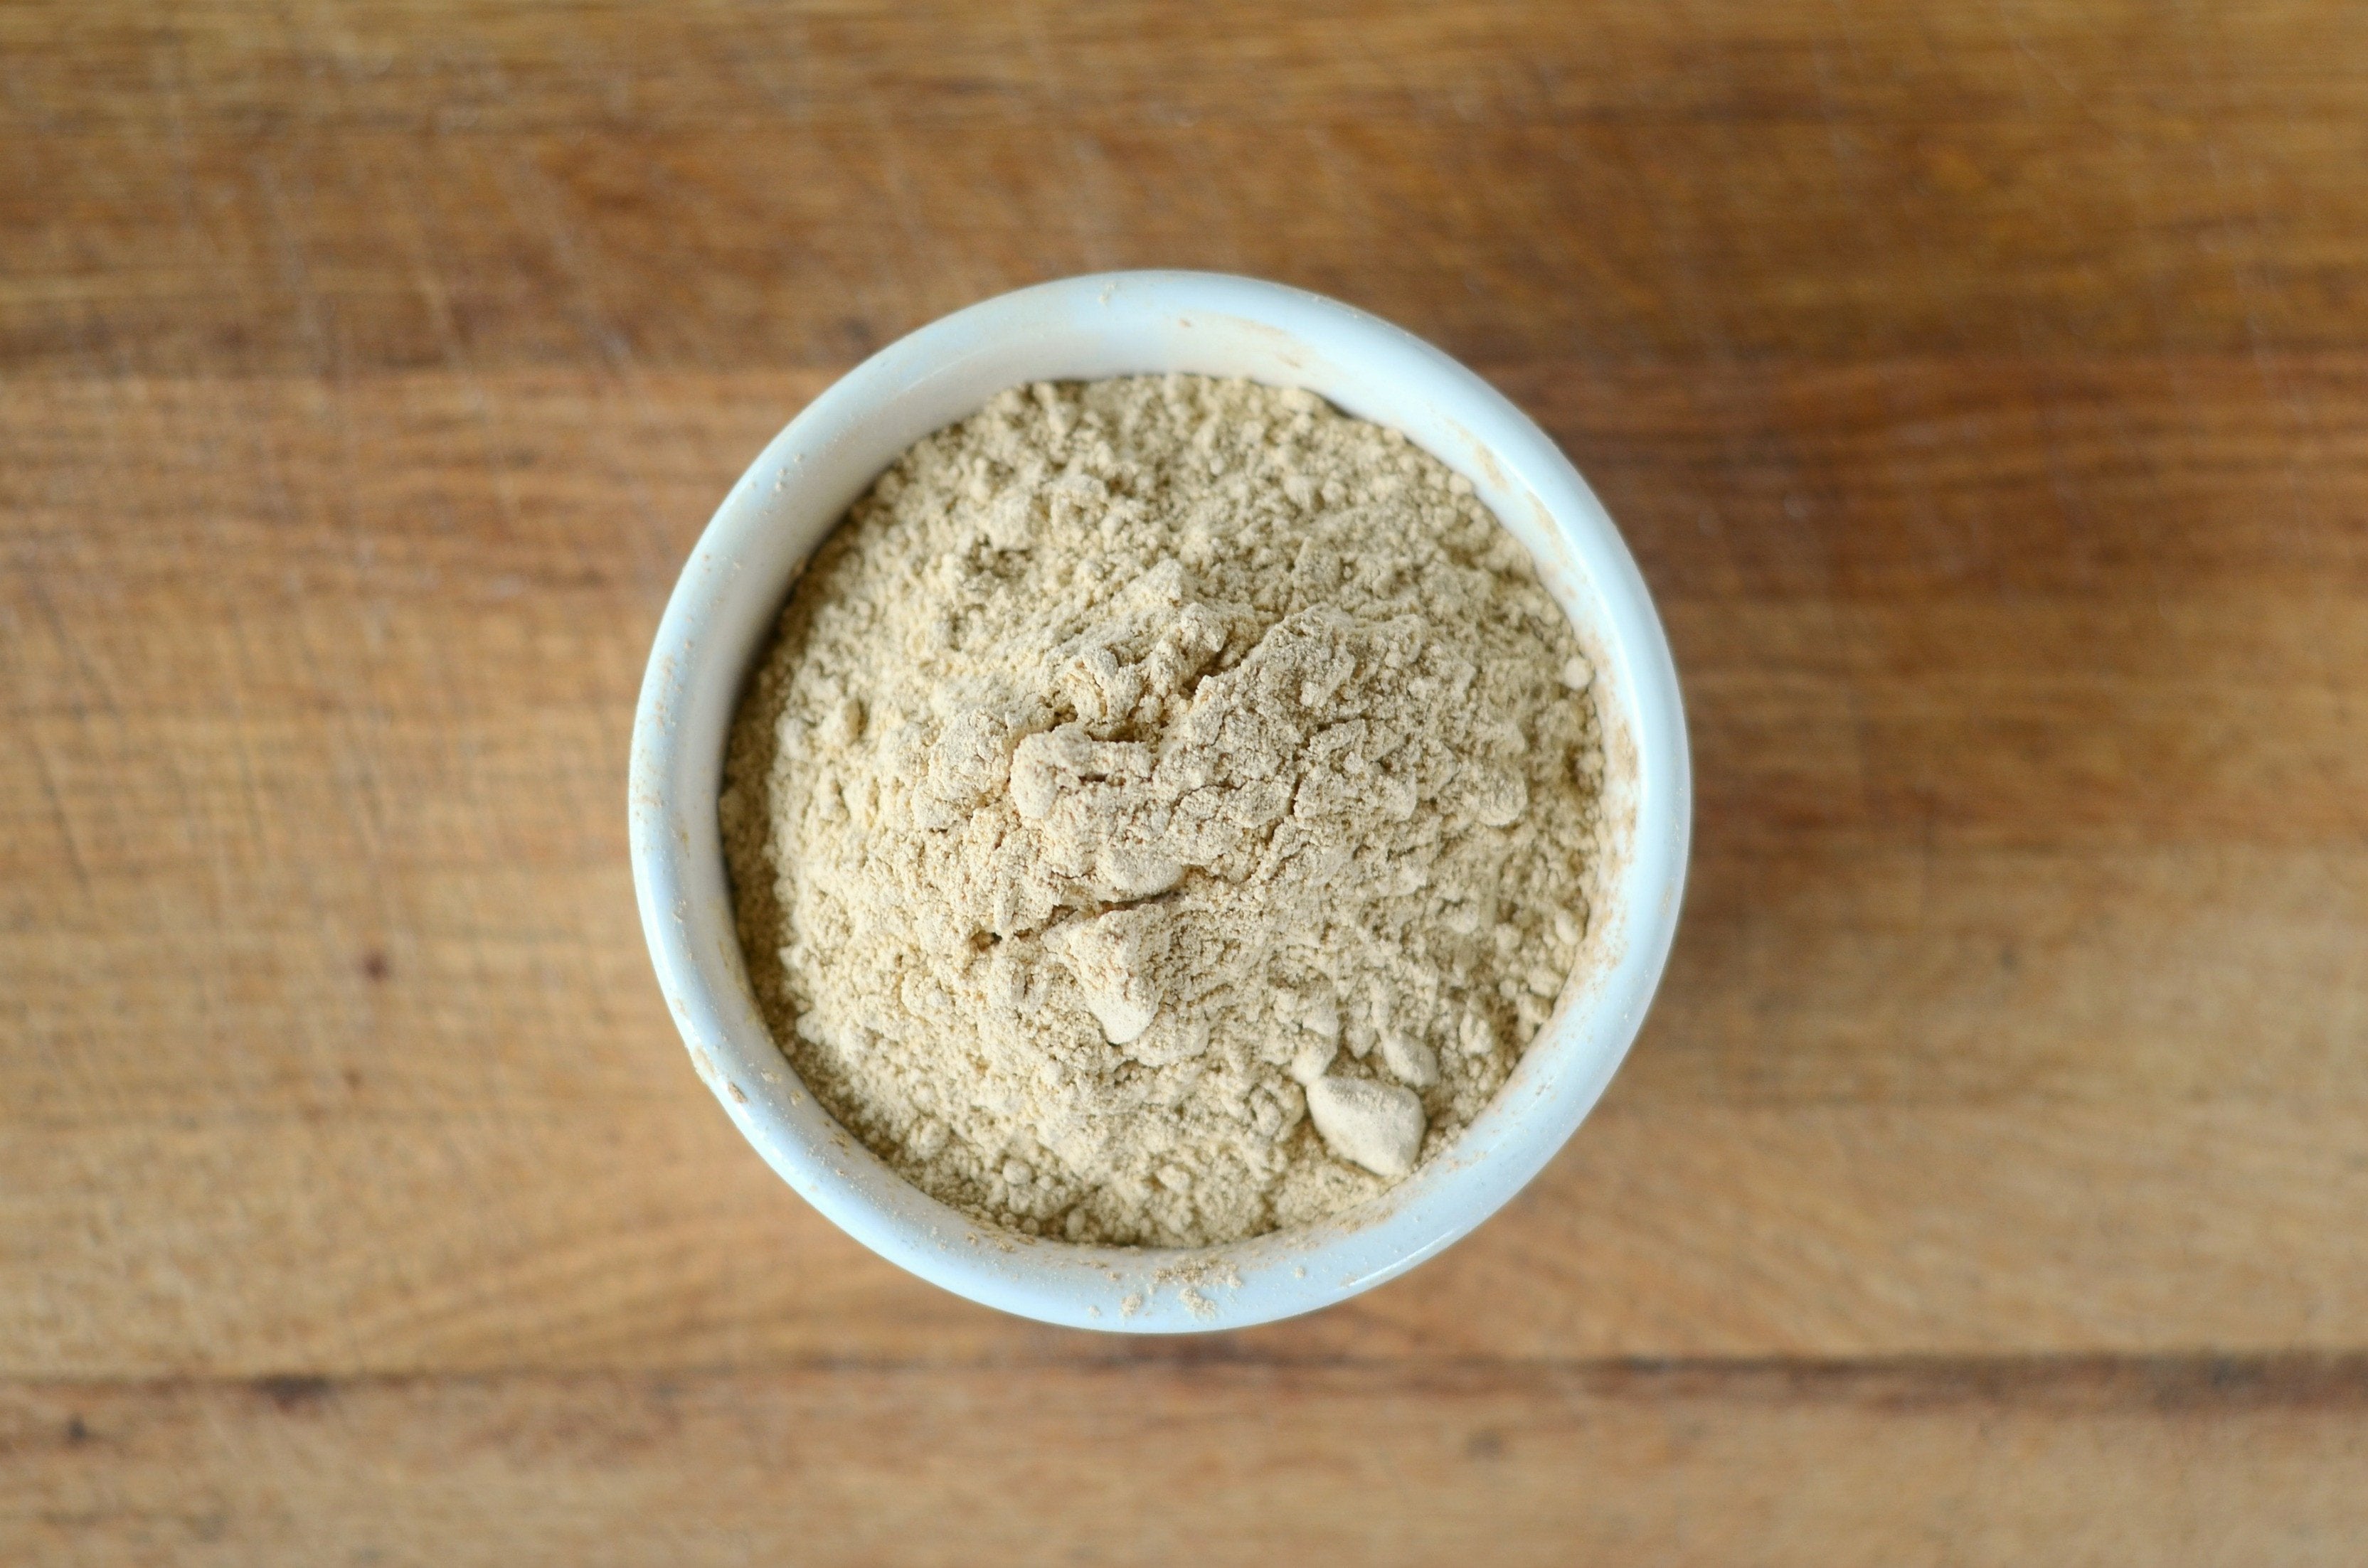 Organic Yellow Maca Root Powder: Gluten Free, Non-GMO